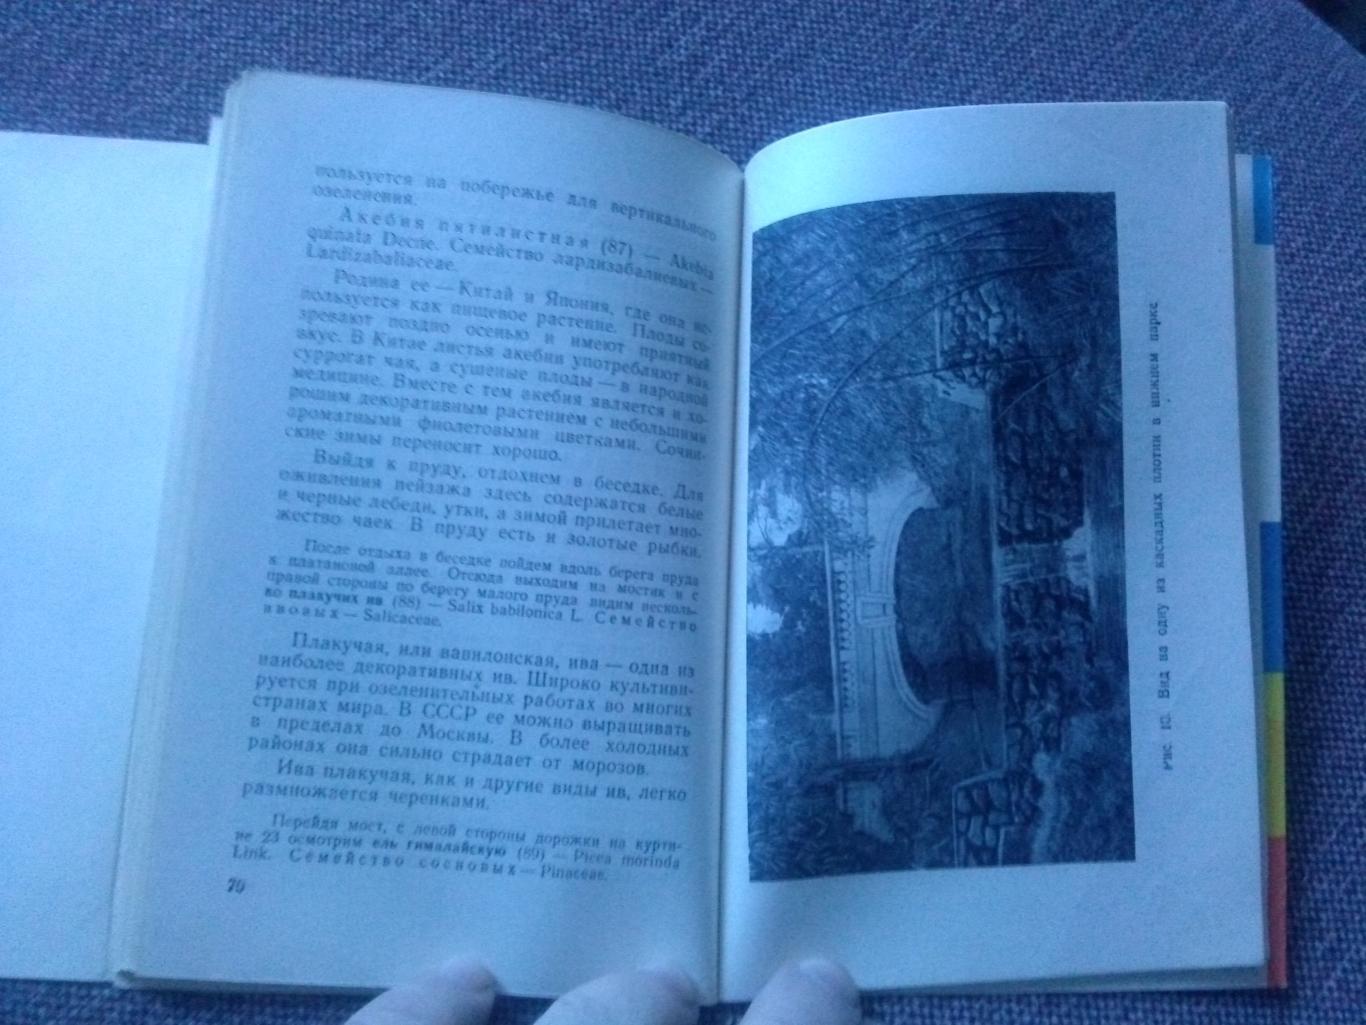 Путеводитель : Сочинский дендрарий 1962 г. (суперобложка) Сочи флора Кавказ 4